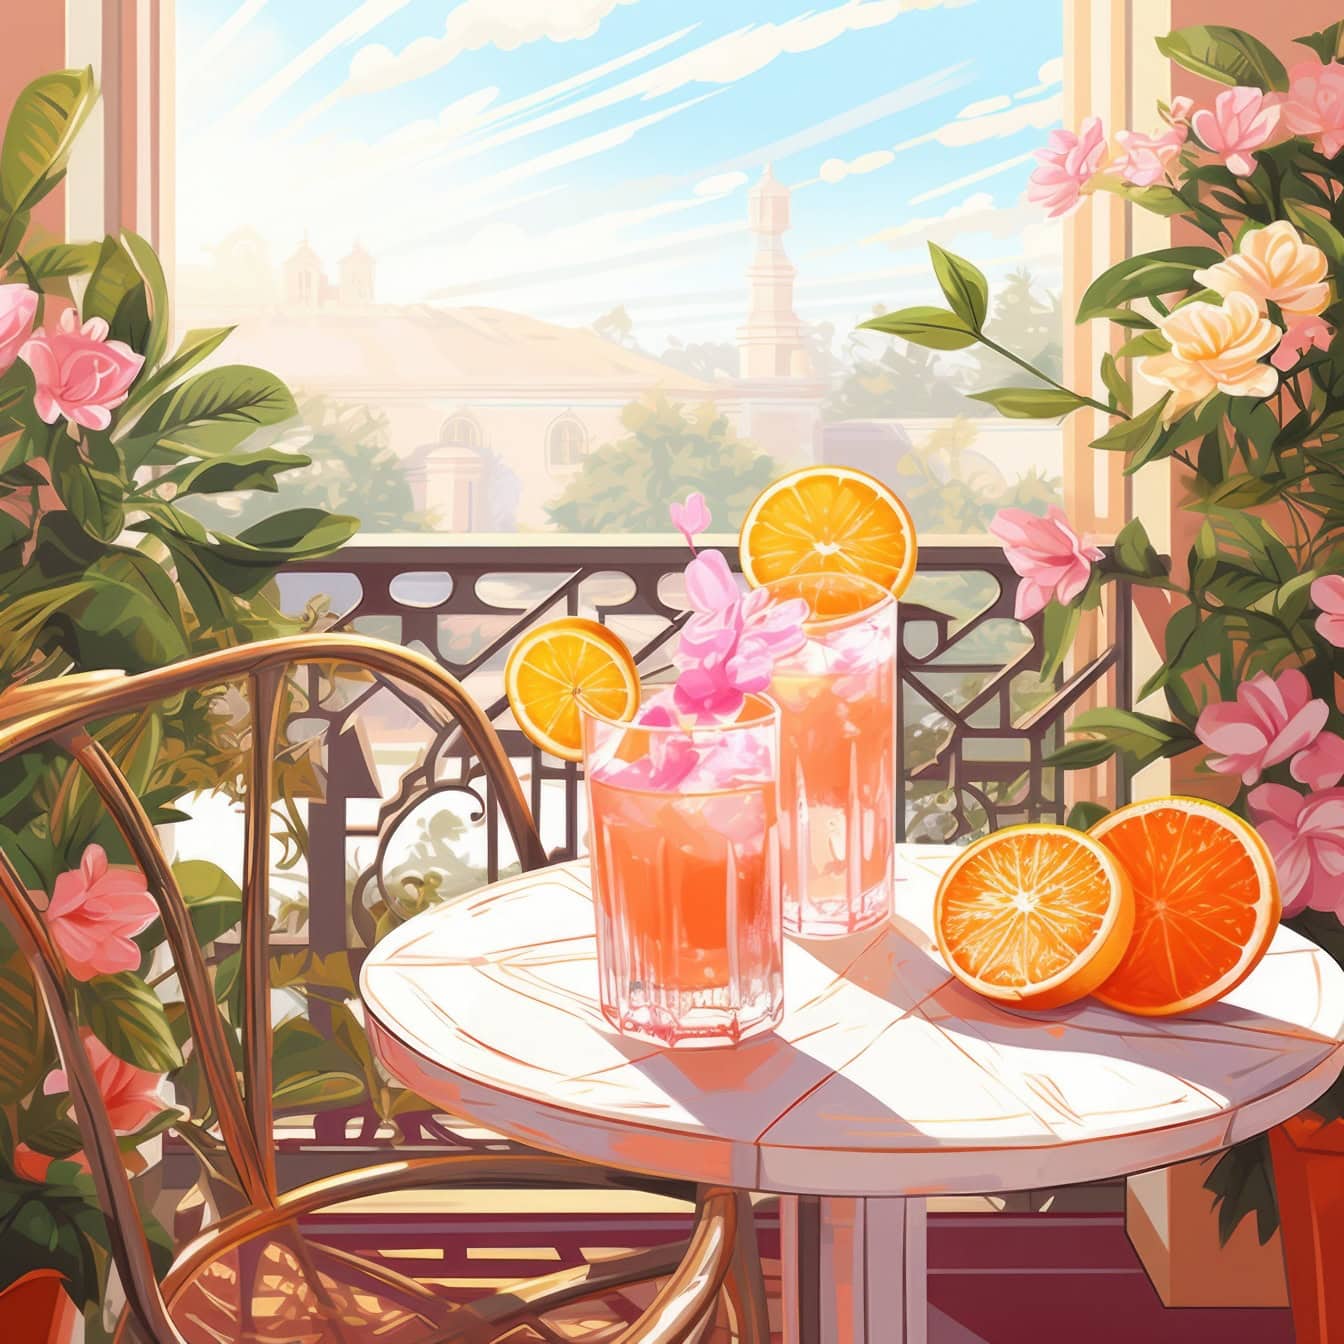 Ilustração gráfica de uma tabela com sumos de laranja, laranjas e flores nele